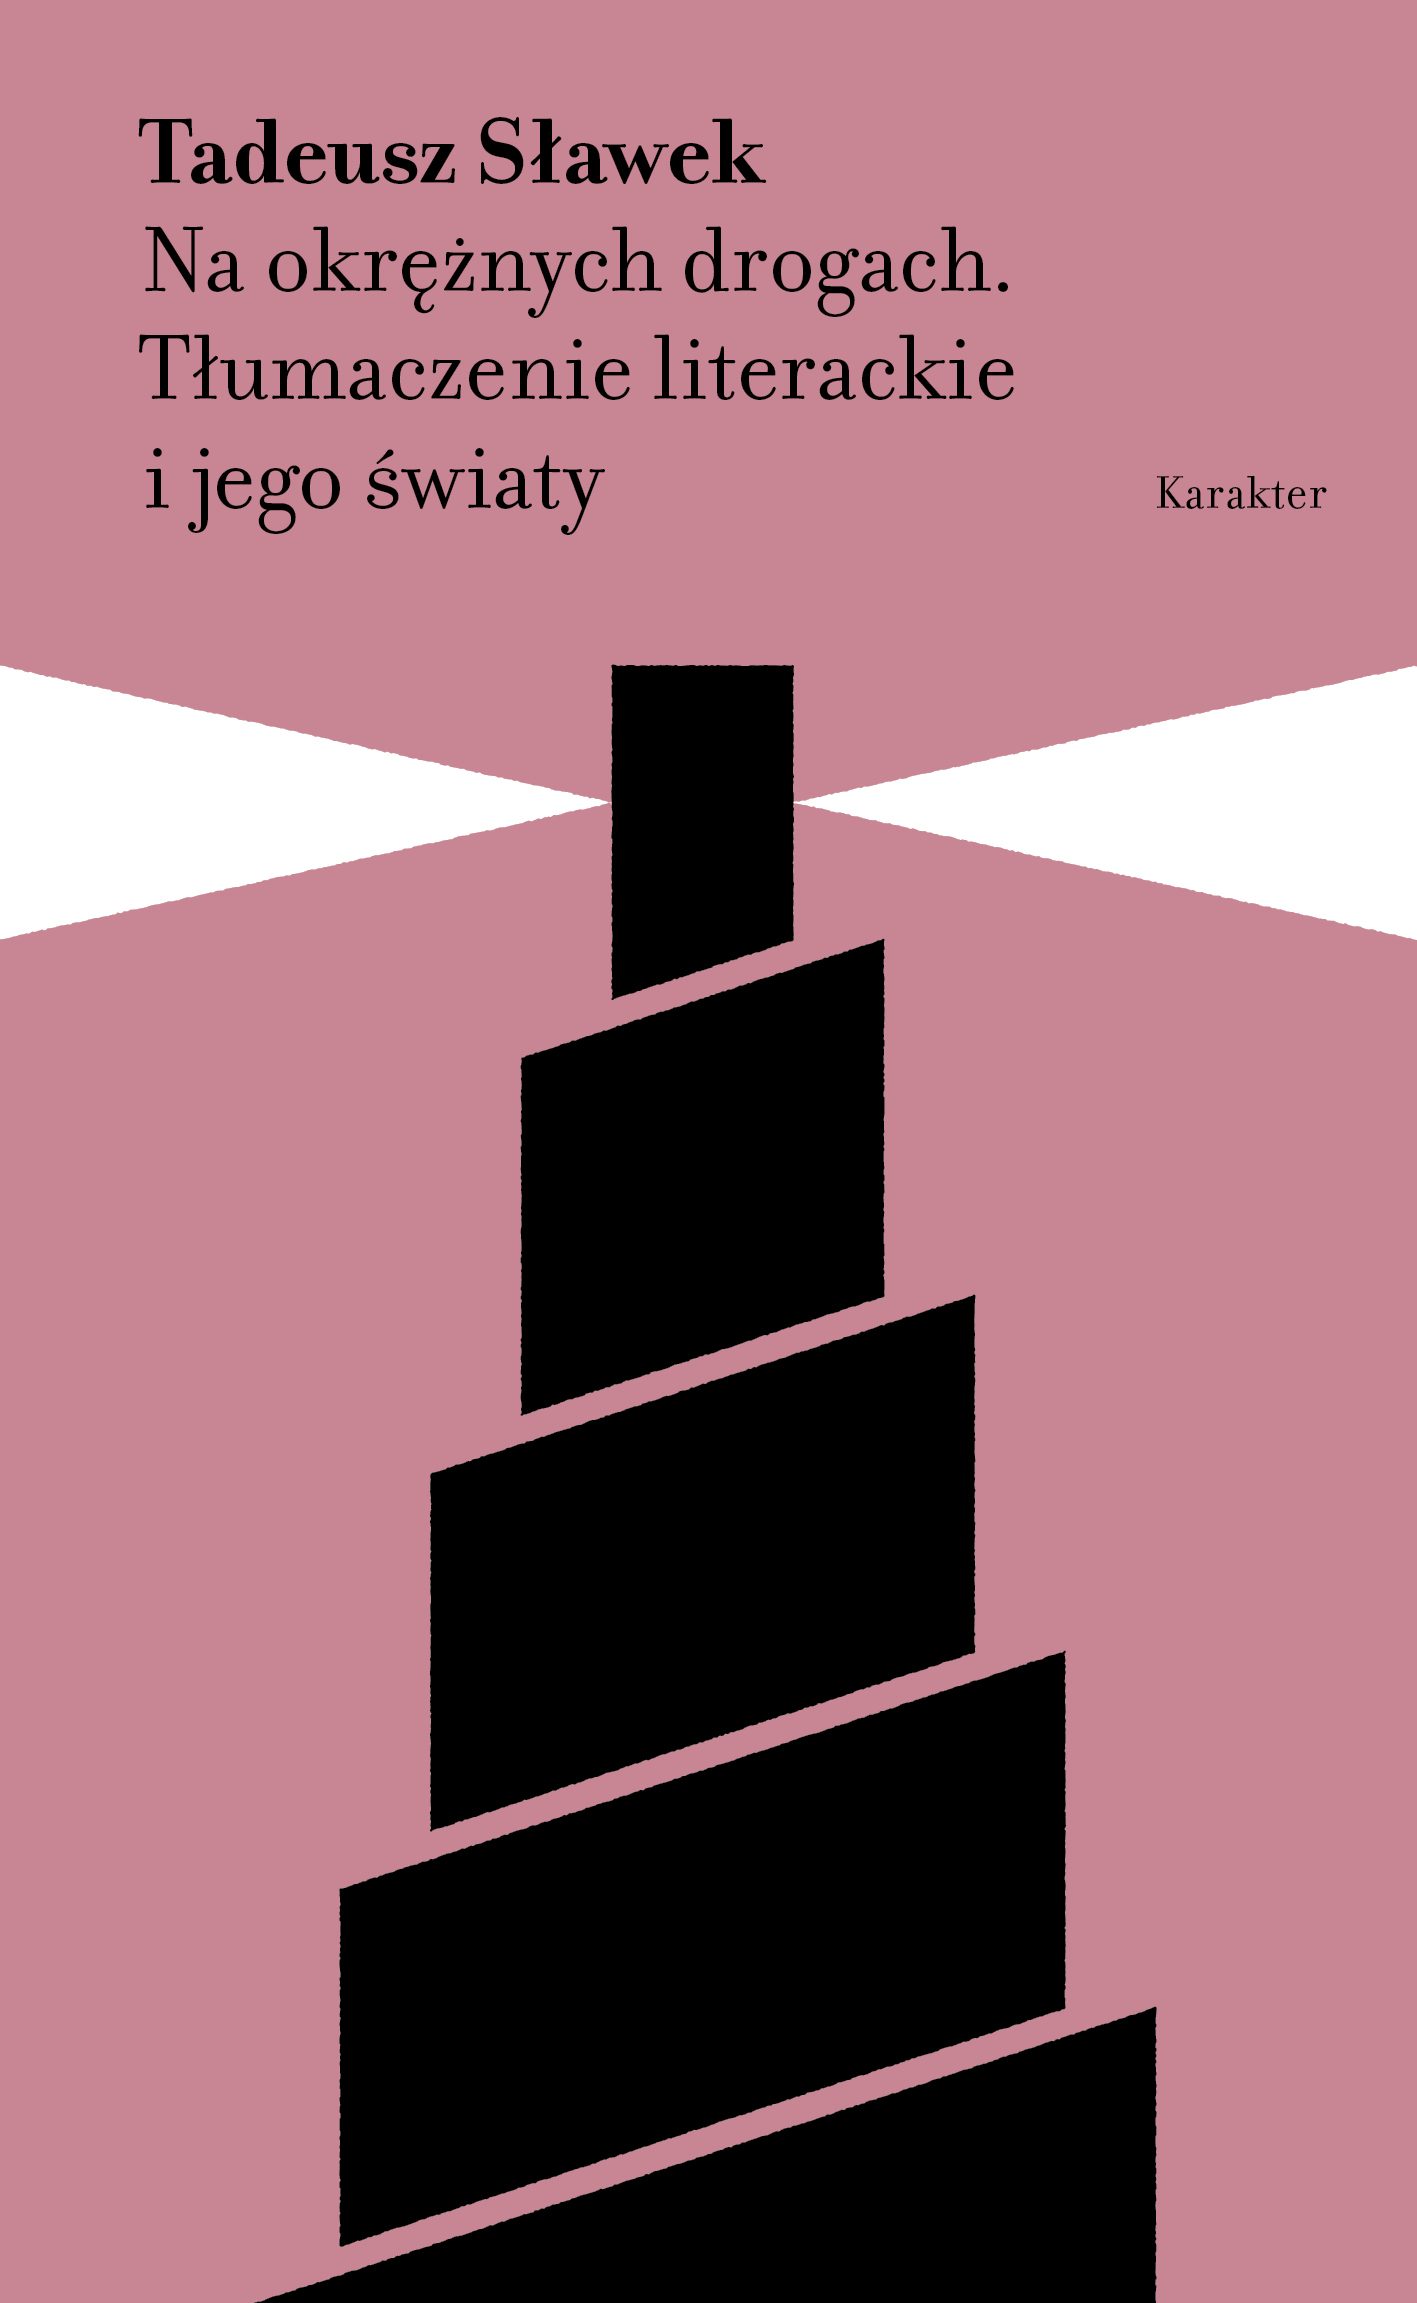 Okładka książki: "Na okrężnych drogach. Tłumaczenie literackie i jego światy" autorstwa Tadeusza Sławka. Okładka przedstawia latarnie morską.